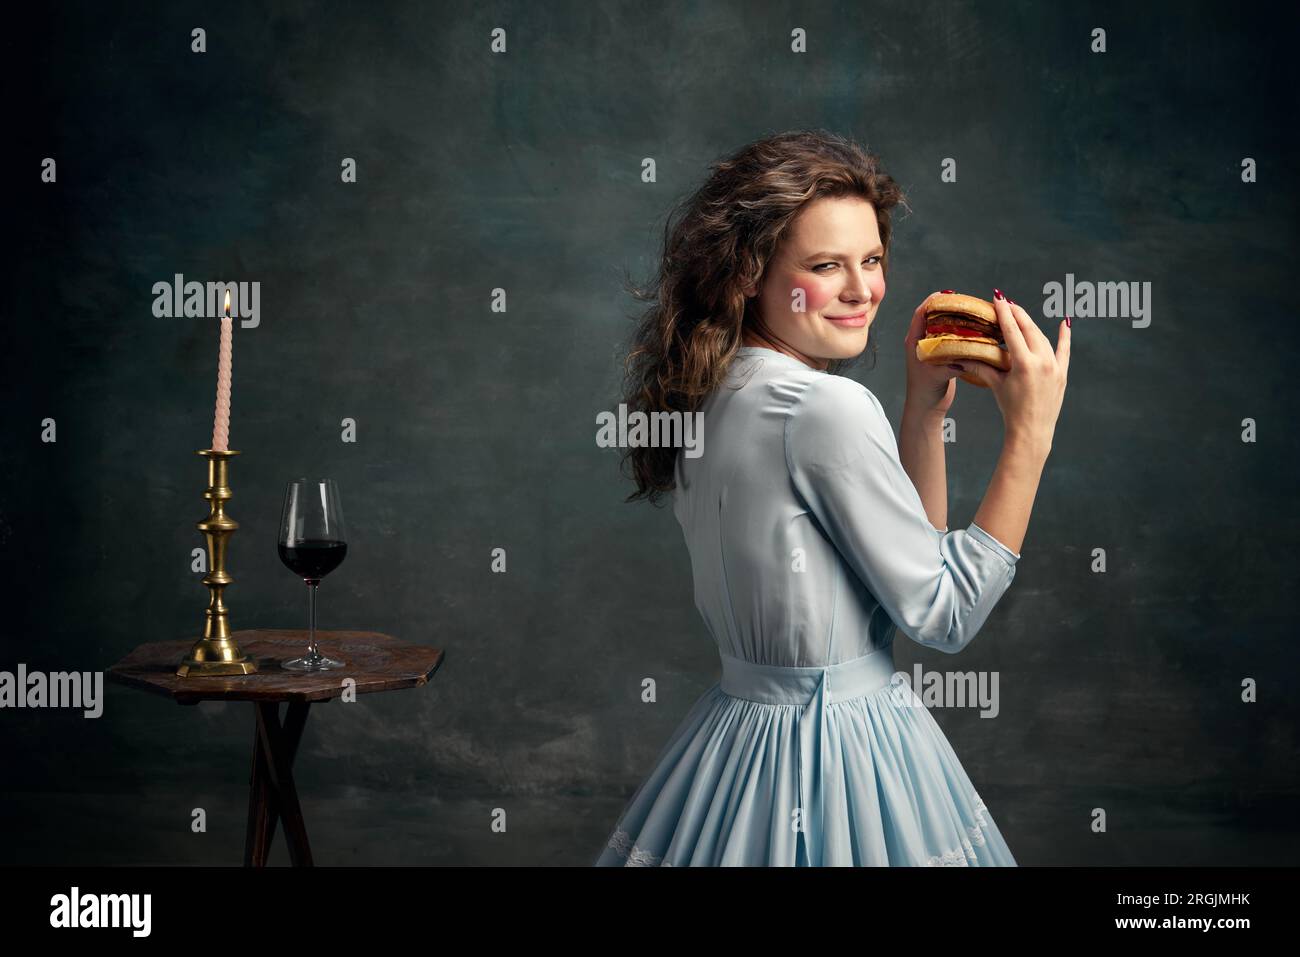 Prinzessin. Porträt einer aristokratischen schlau aussehenden Frau, die ein blaues historisches Kleid trägt und einen heißen, großen Hamburger hält. Moderne Esskunst. Stockfoto